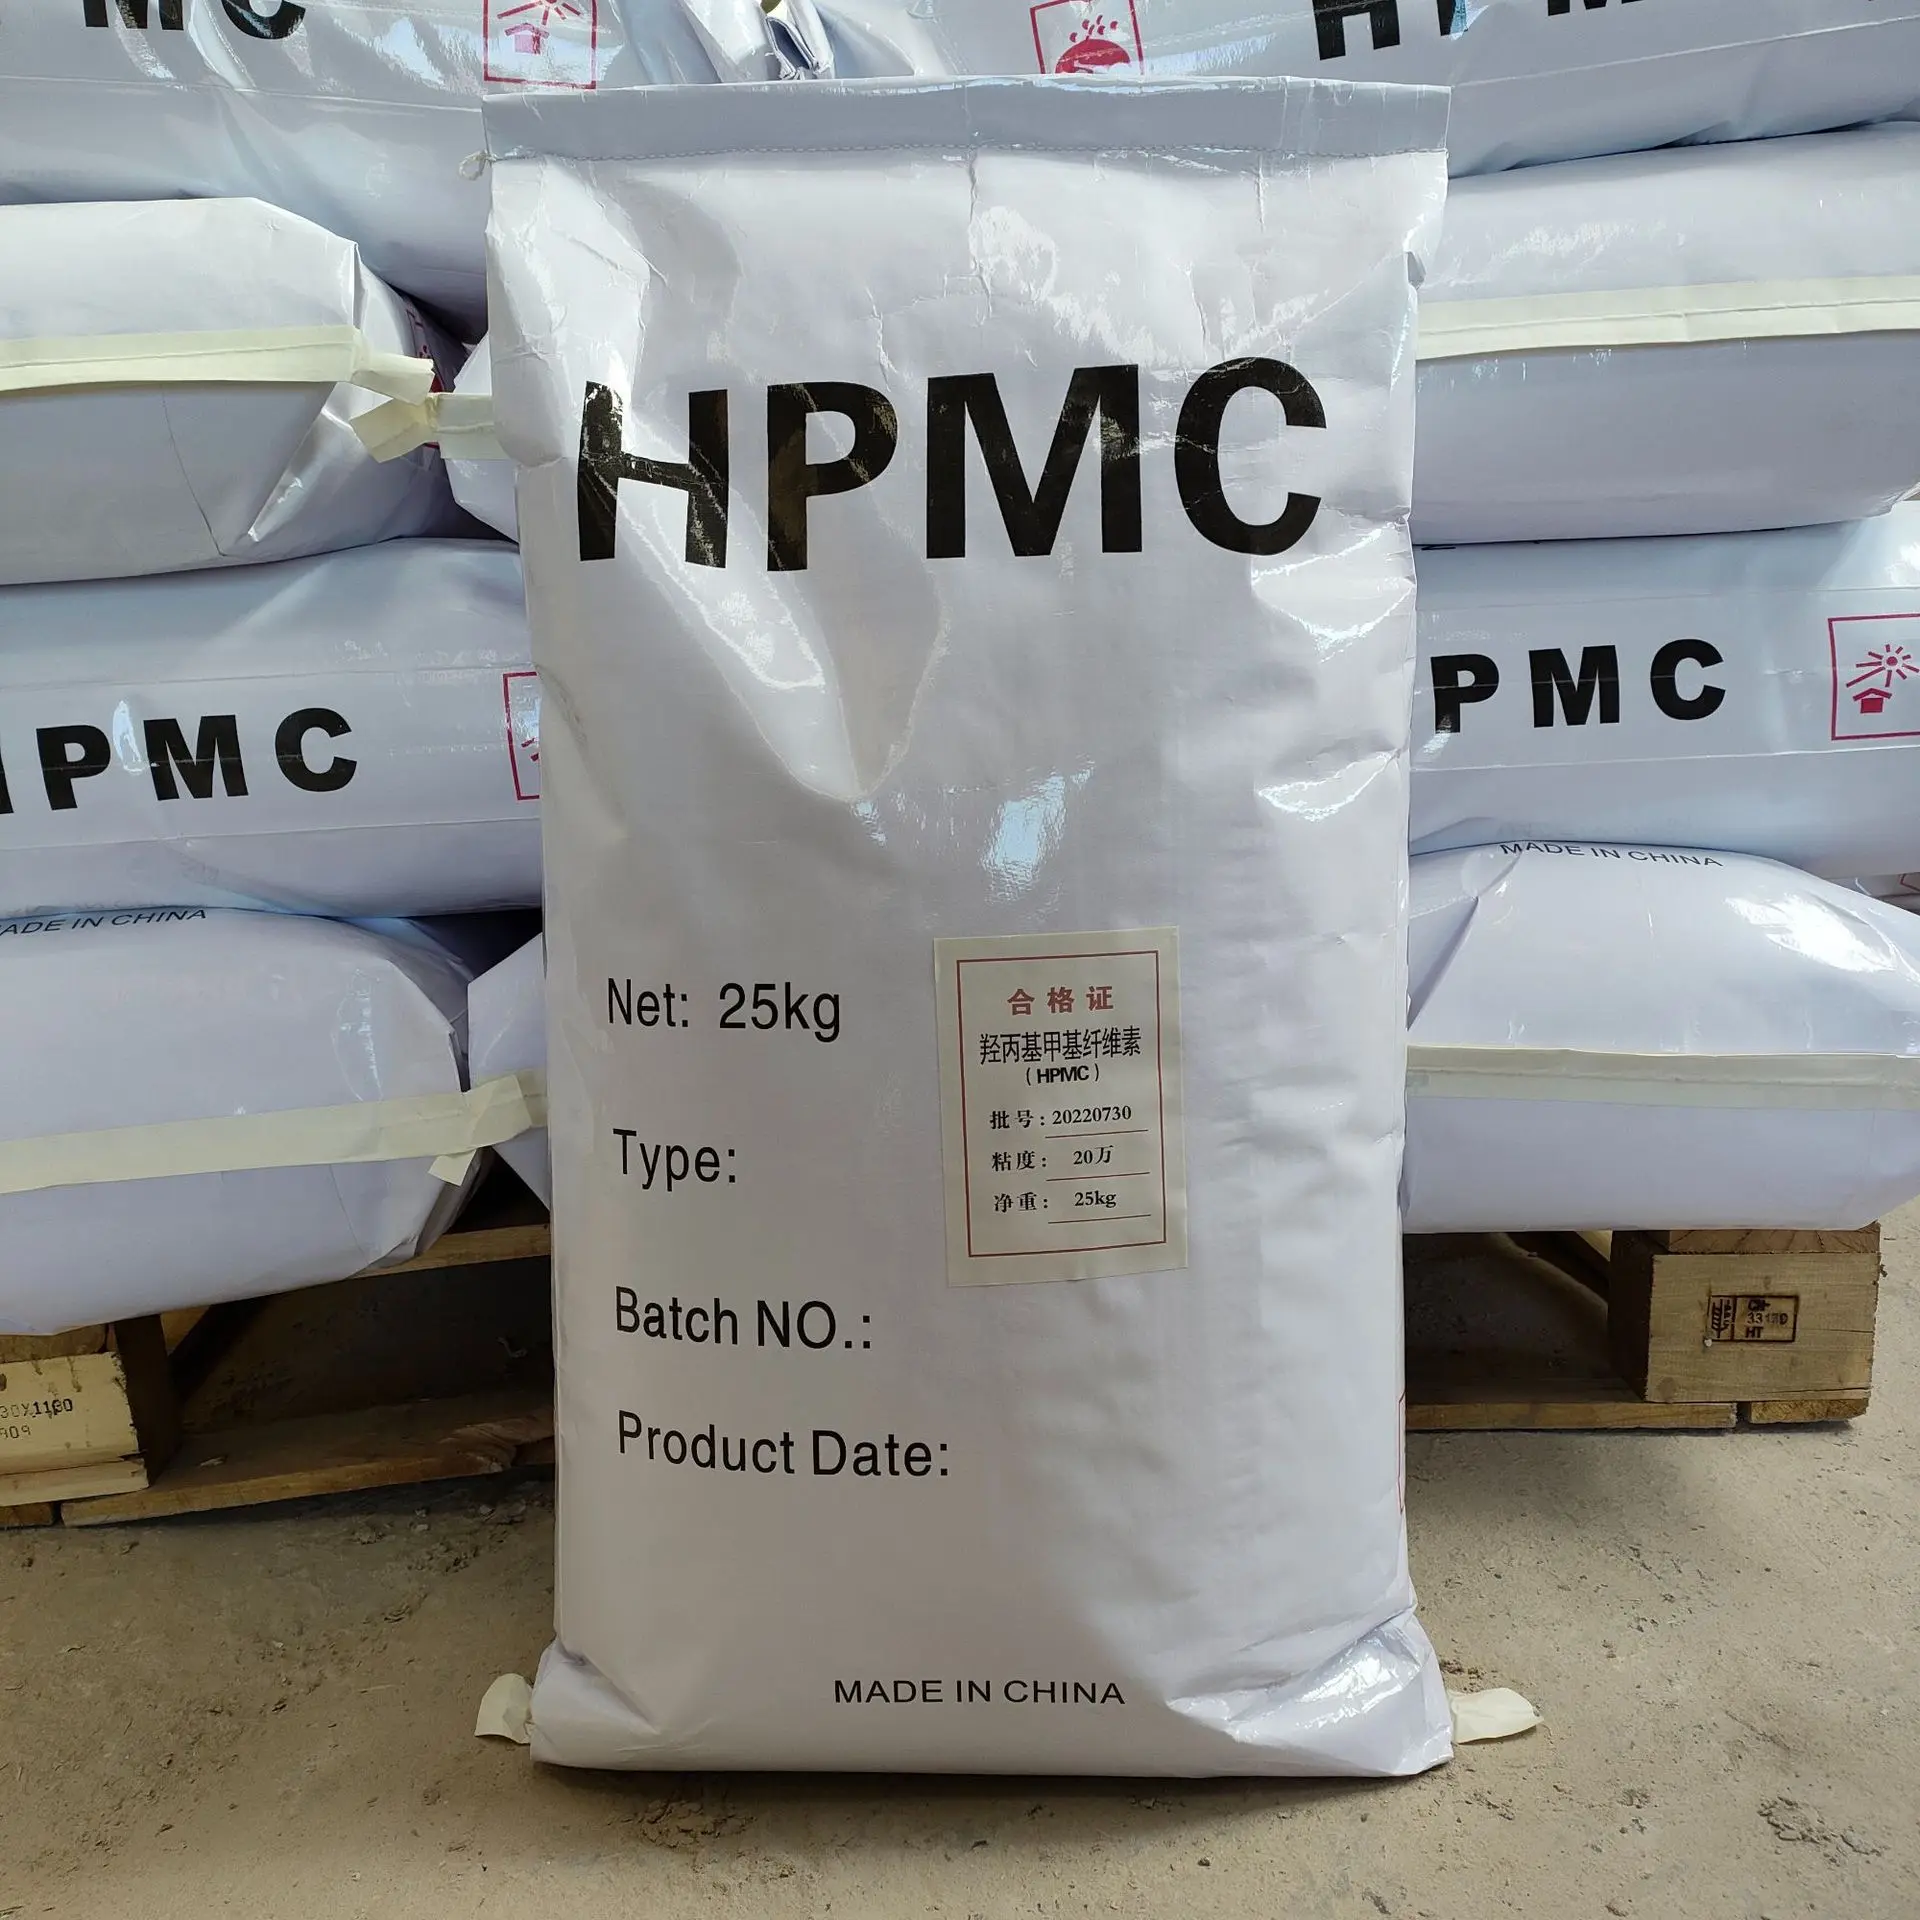 25 кг Hpmc высокой чистоты и вязкости промышленный строительный химикат